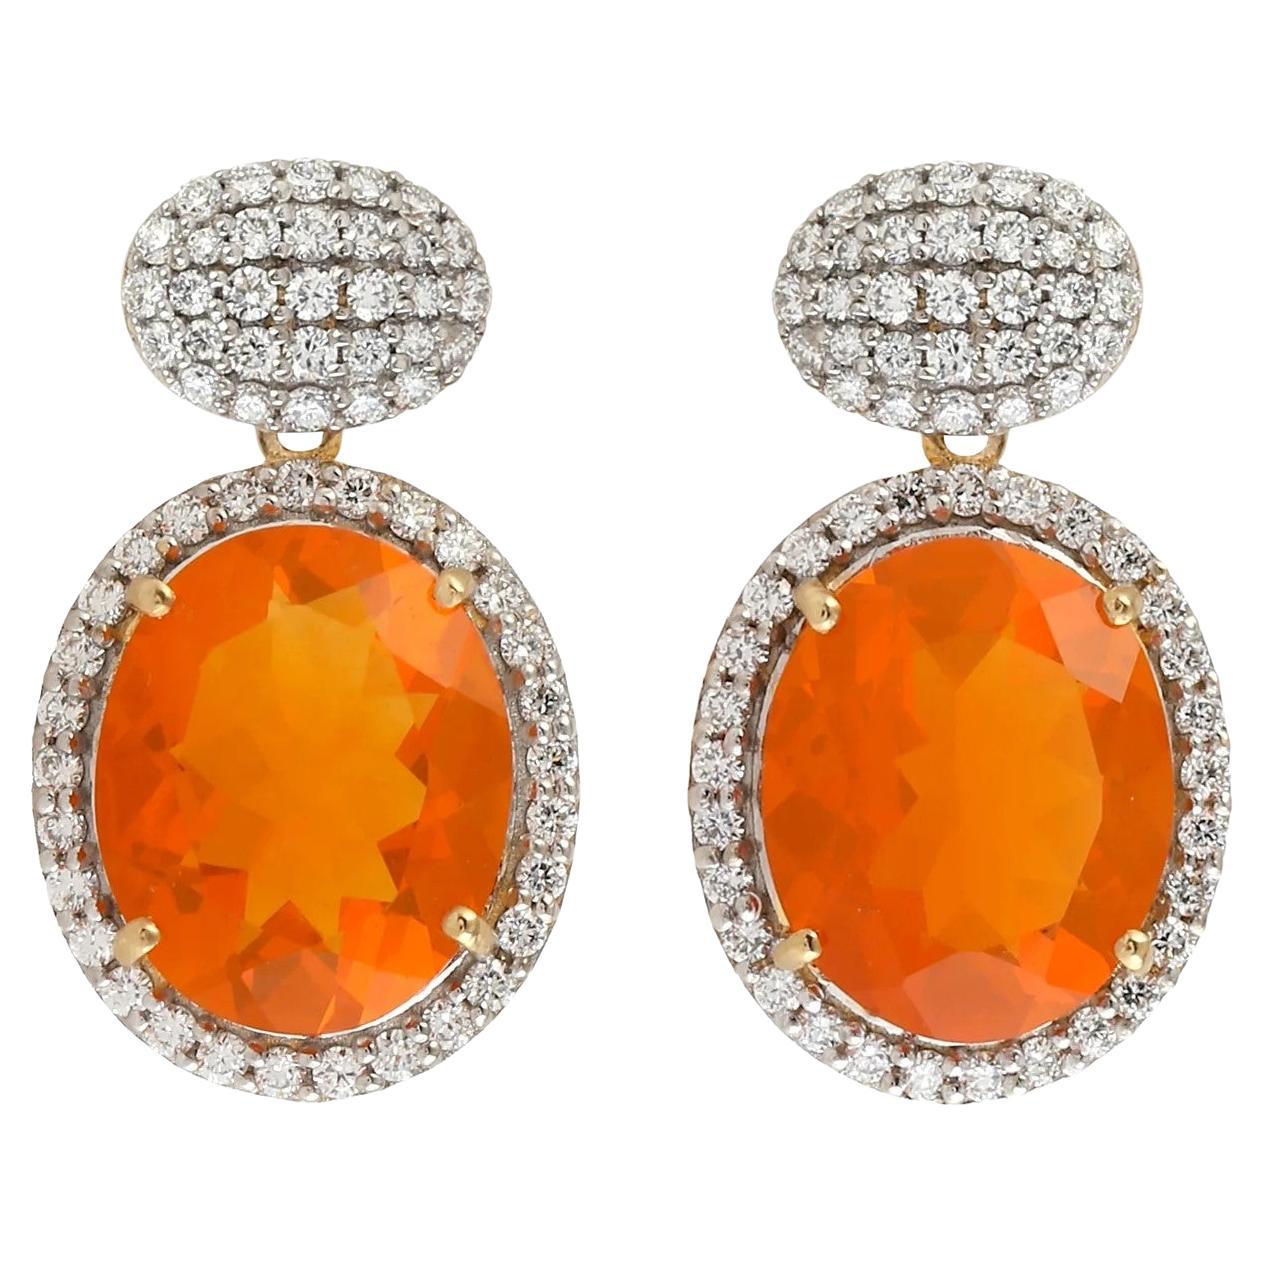 Meghna Jewels 4.58 Carats Fire Opal Diamond 14 Karat Gold Earrings For Sale